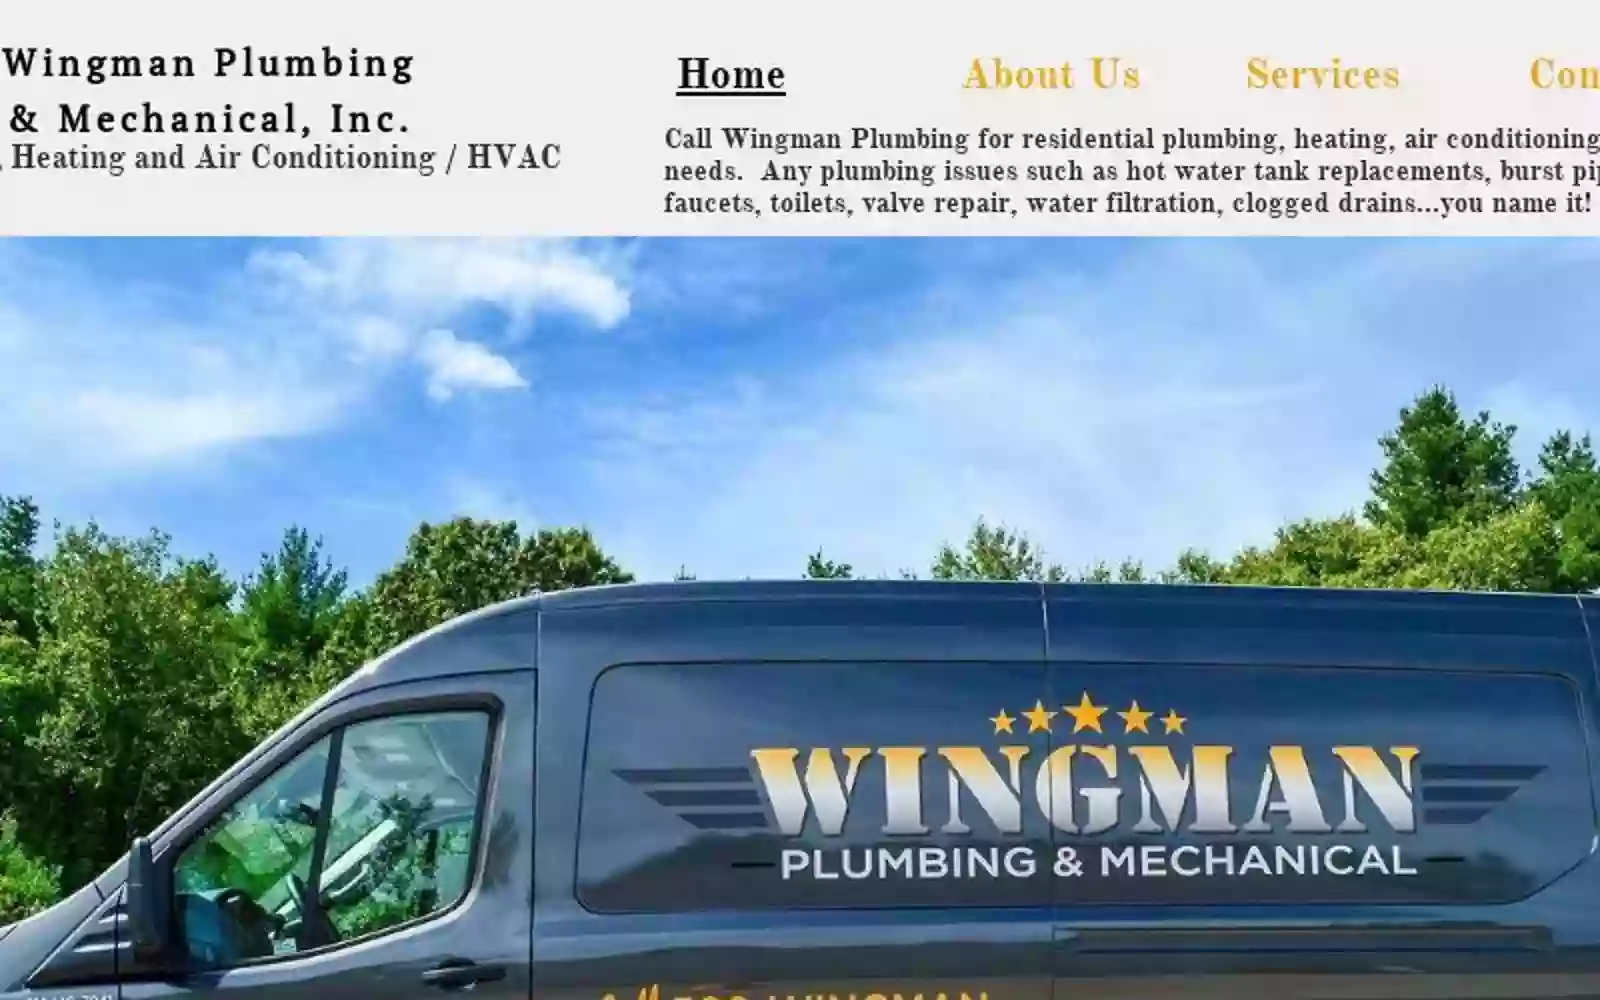 Wingman Plumbing & Mechanical, Inc.